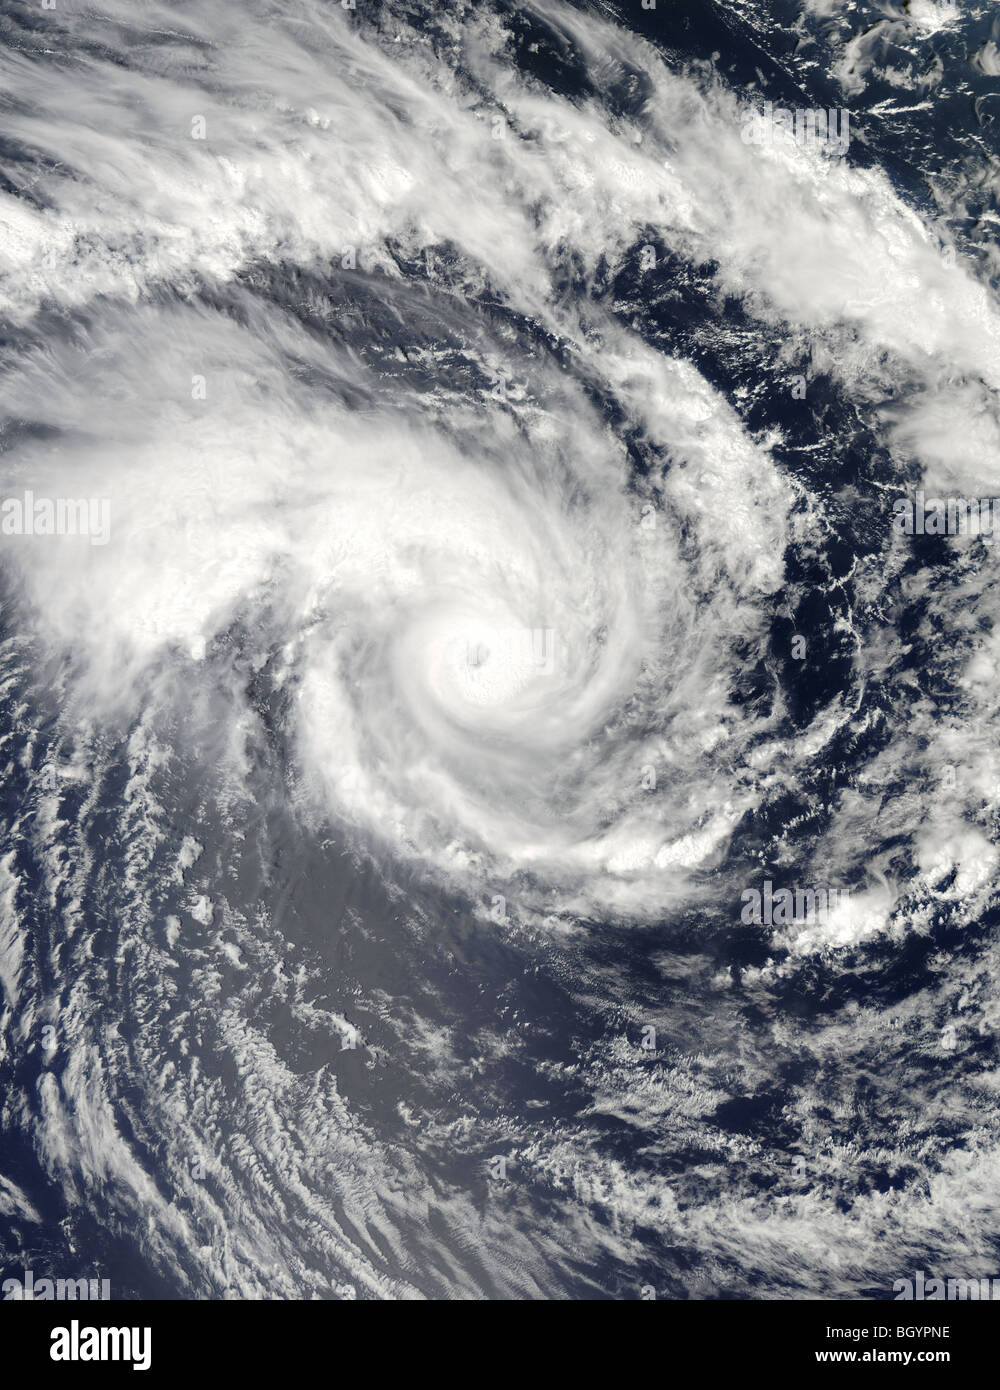 Ciclone tropicale Edzani, Immagine cortesia della NASA Foto Stock